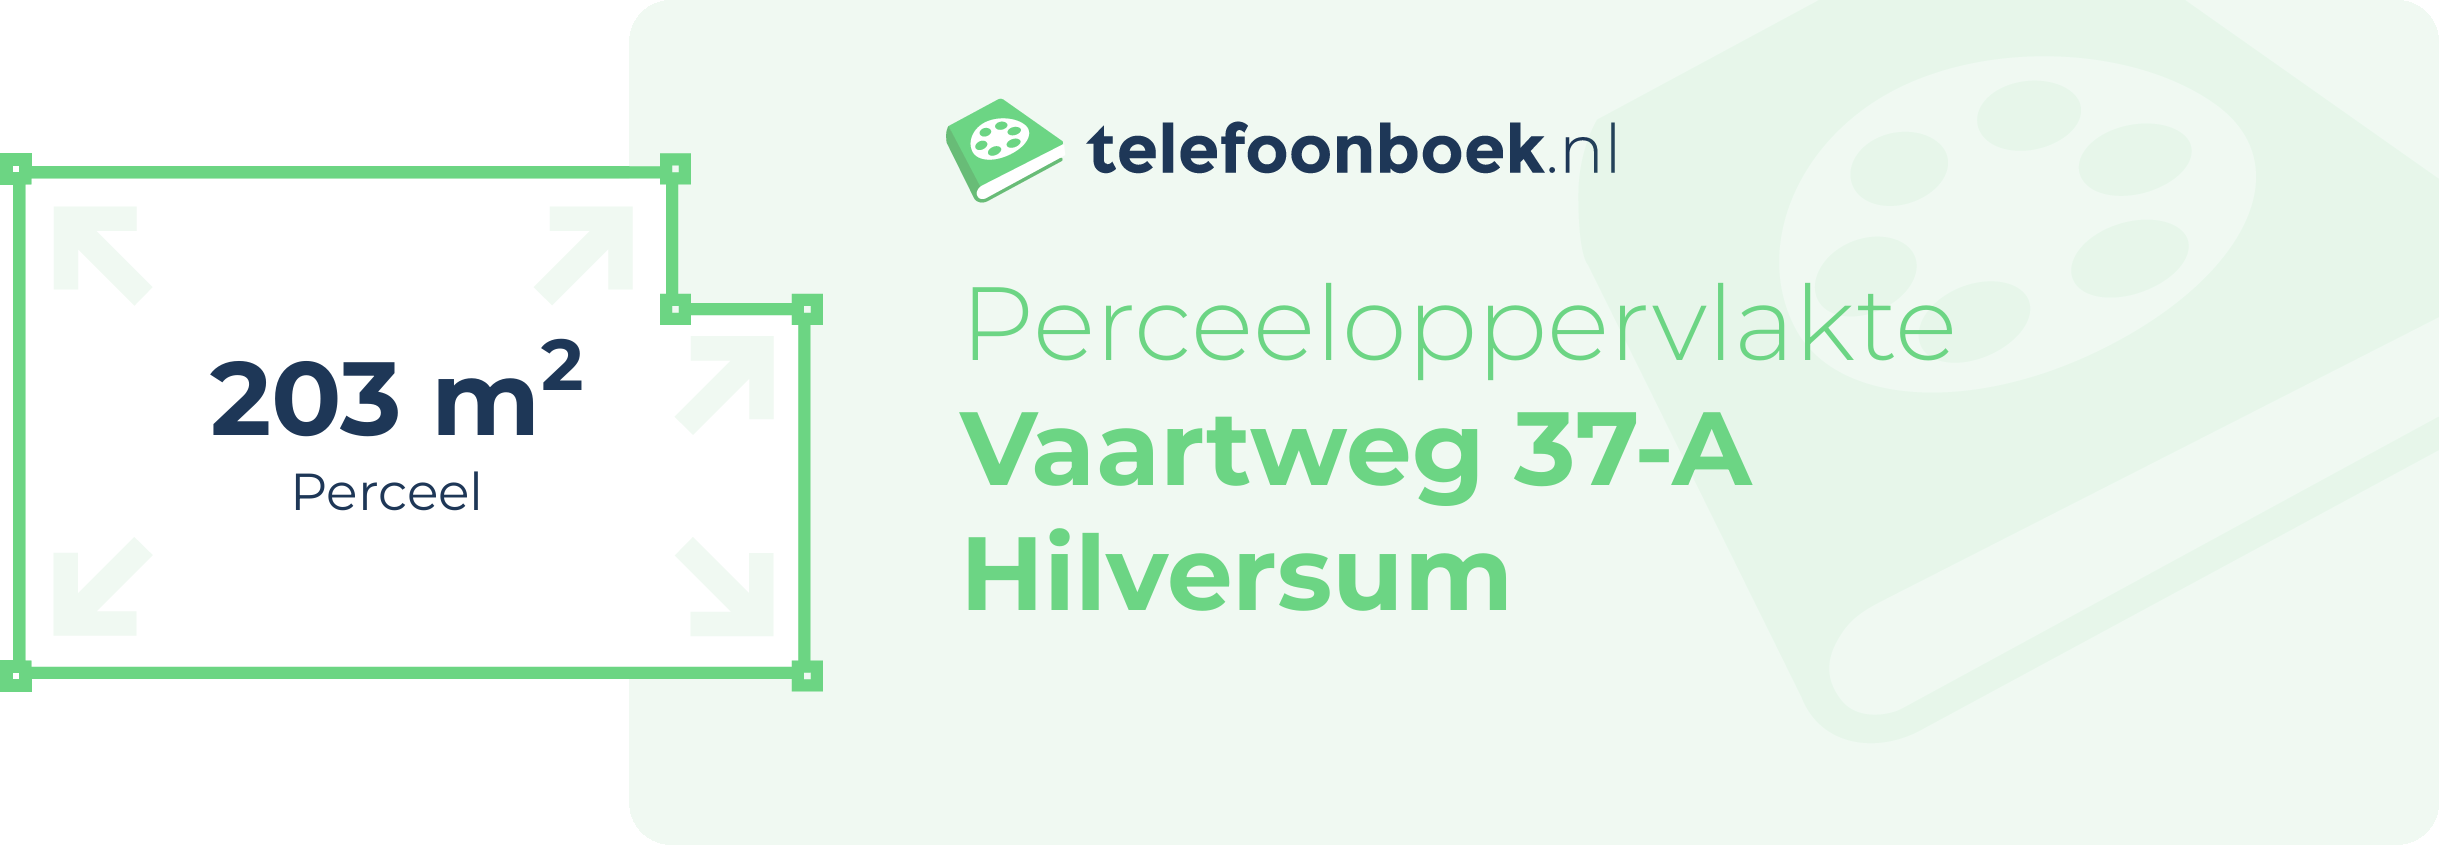 Perceeloppervlakte Vaartweg 37-A Hilversum